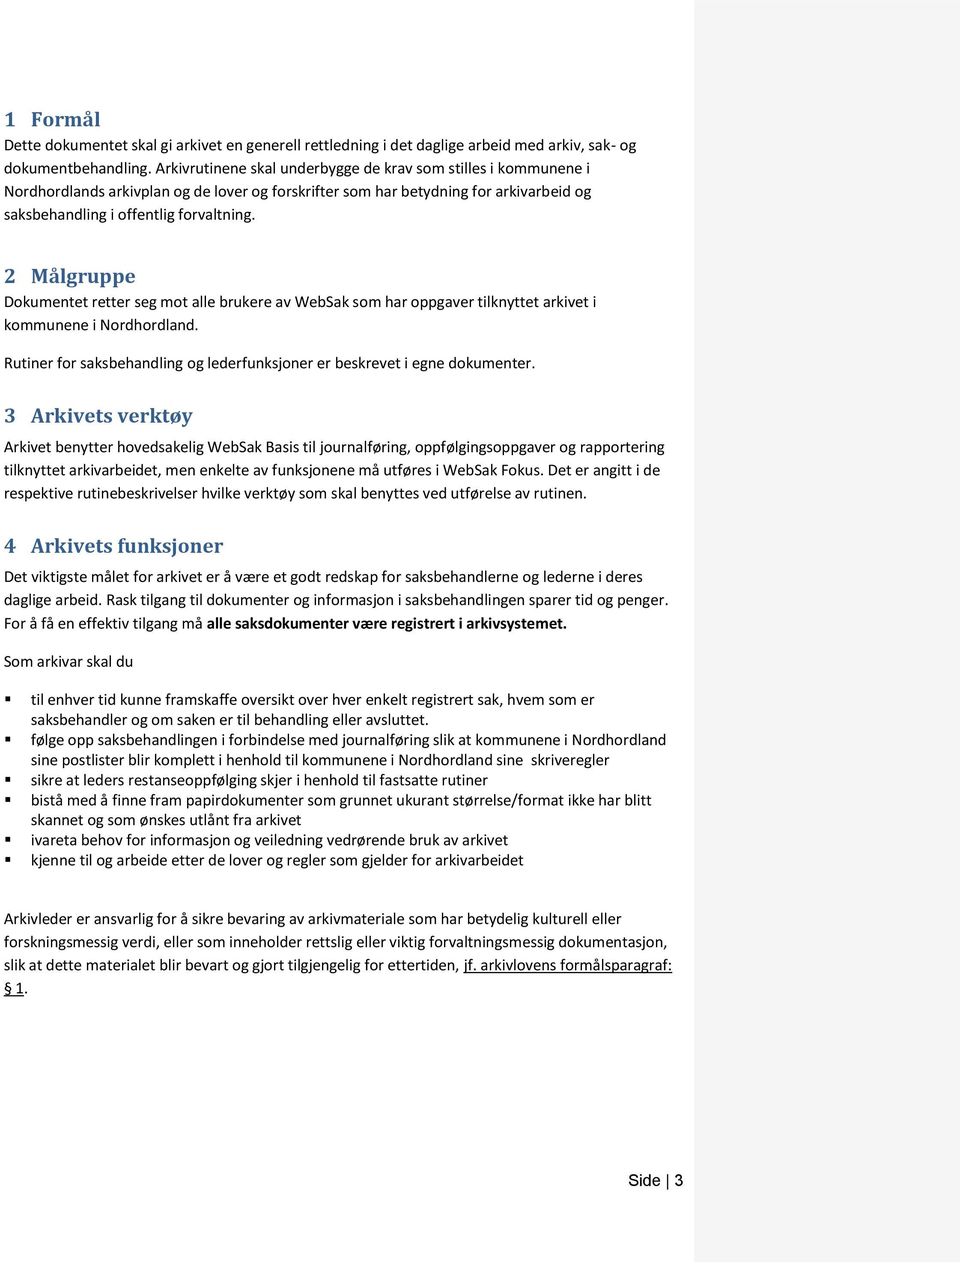 2 Målgruppe Dokumentet retter seg mot alle brukere av WebSak som har oppgaver tilknyttet arkivet i kommunene i Nordhordland.